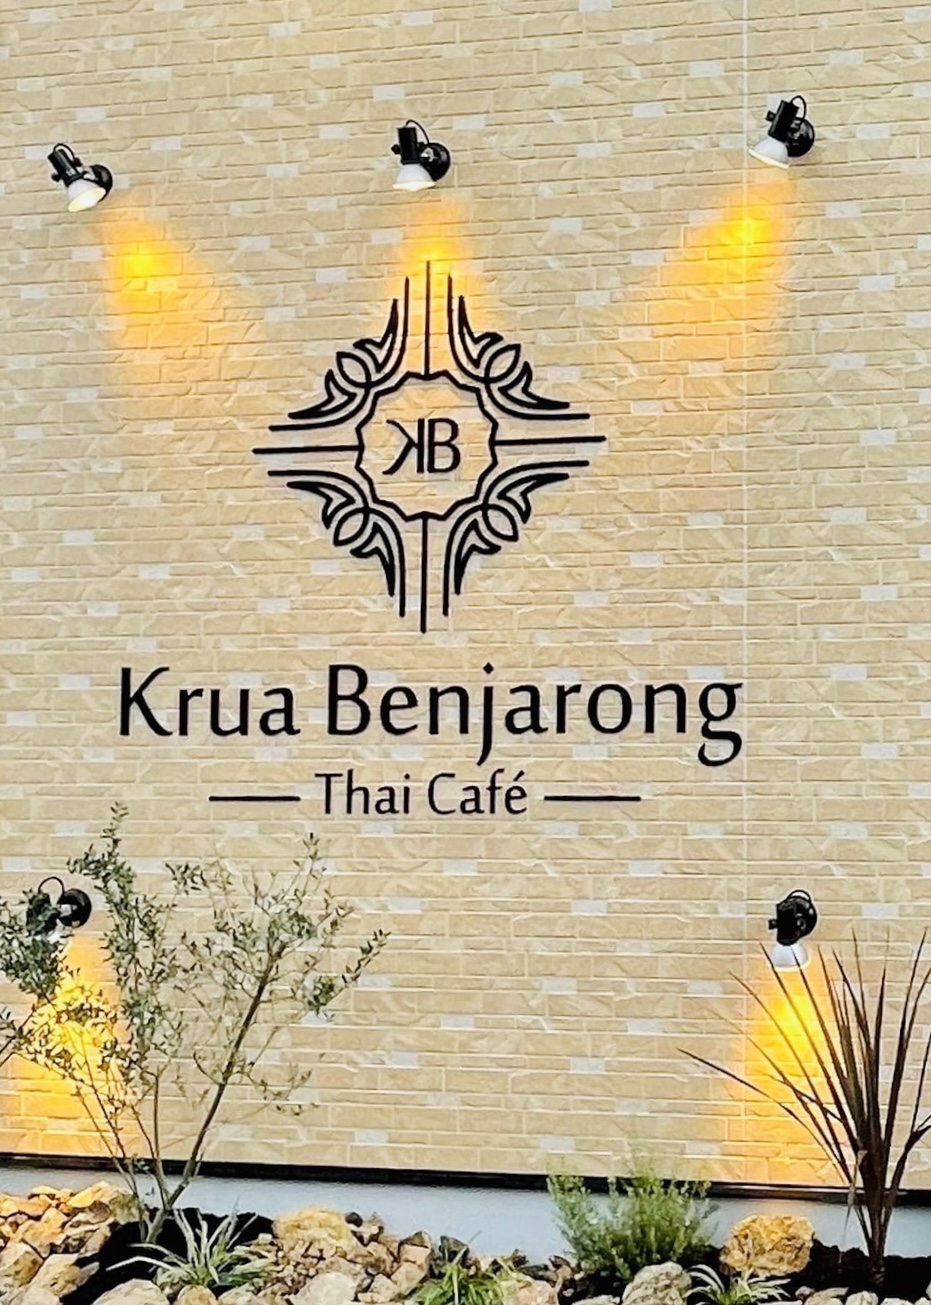 Krua Benjarong Thai cafe